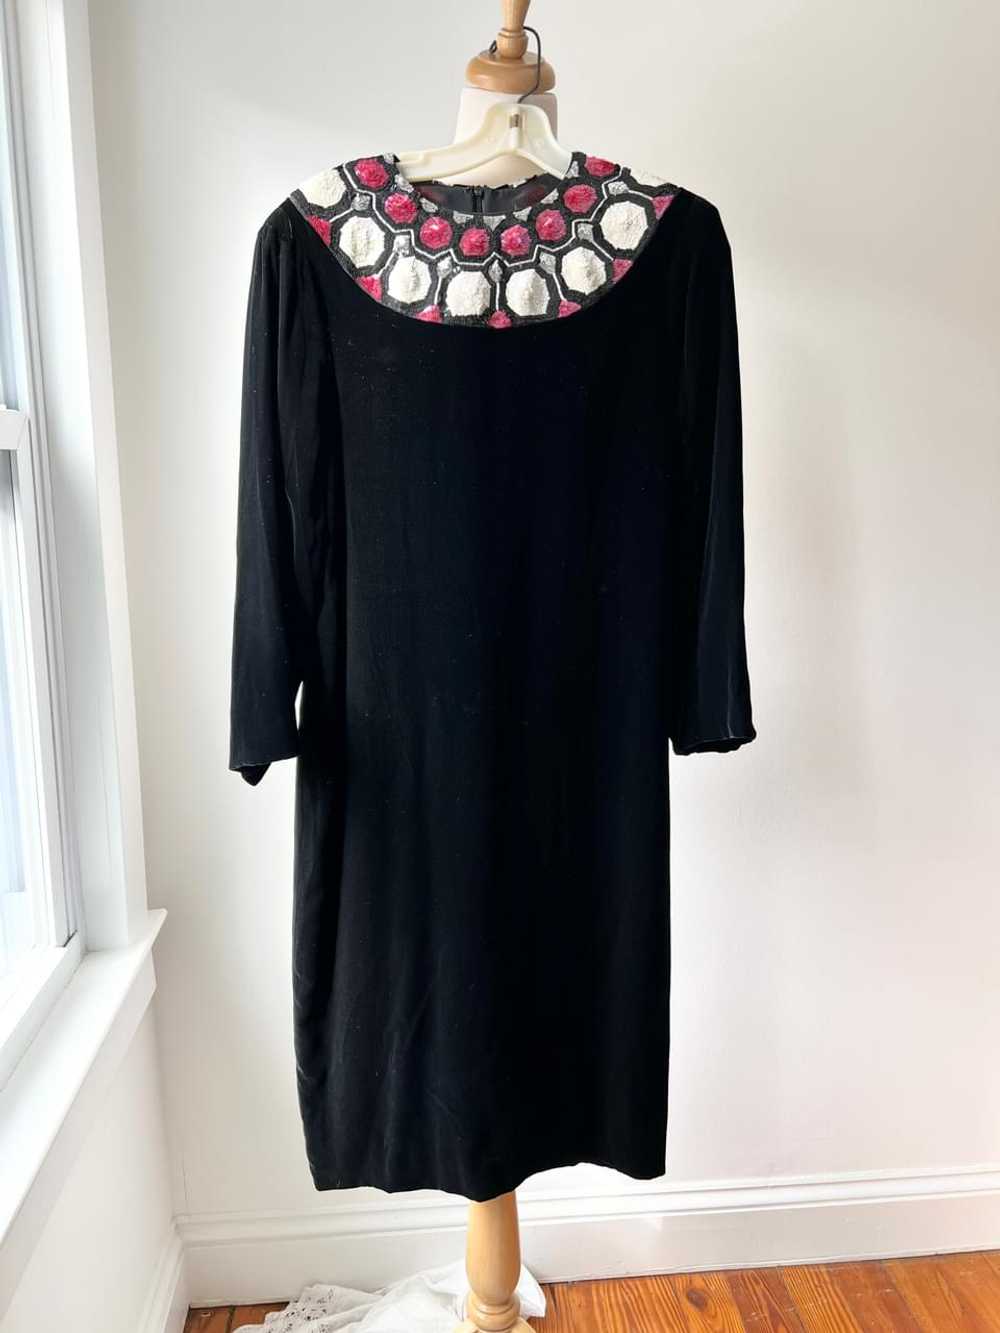 80s sequin black velvet dress (M) - image 1